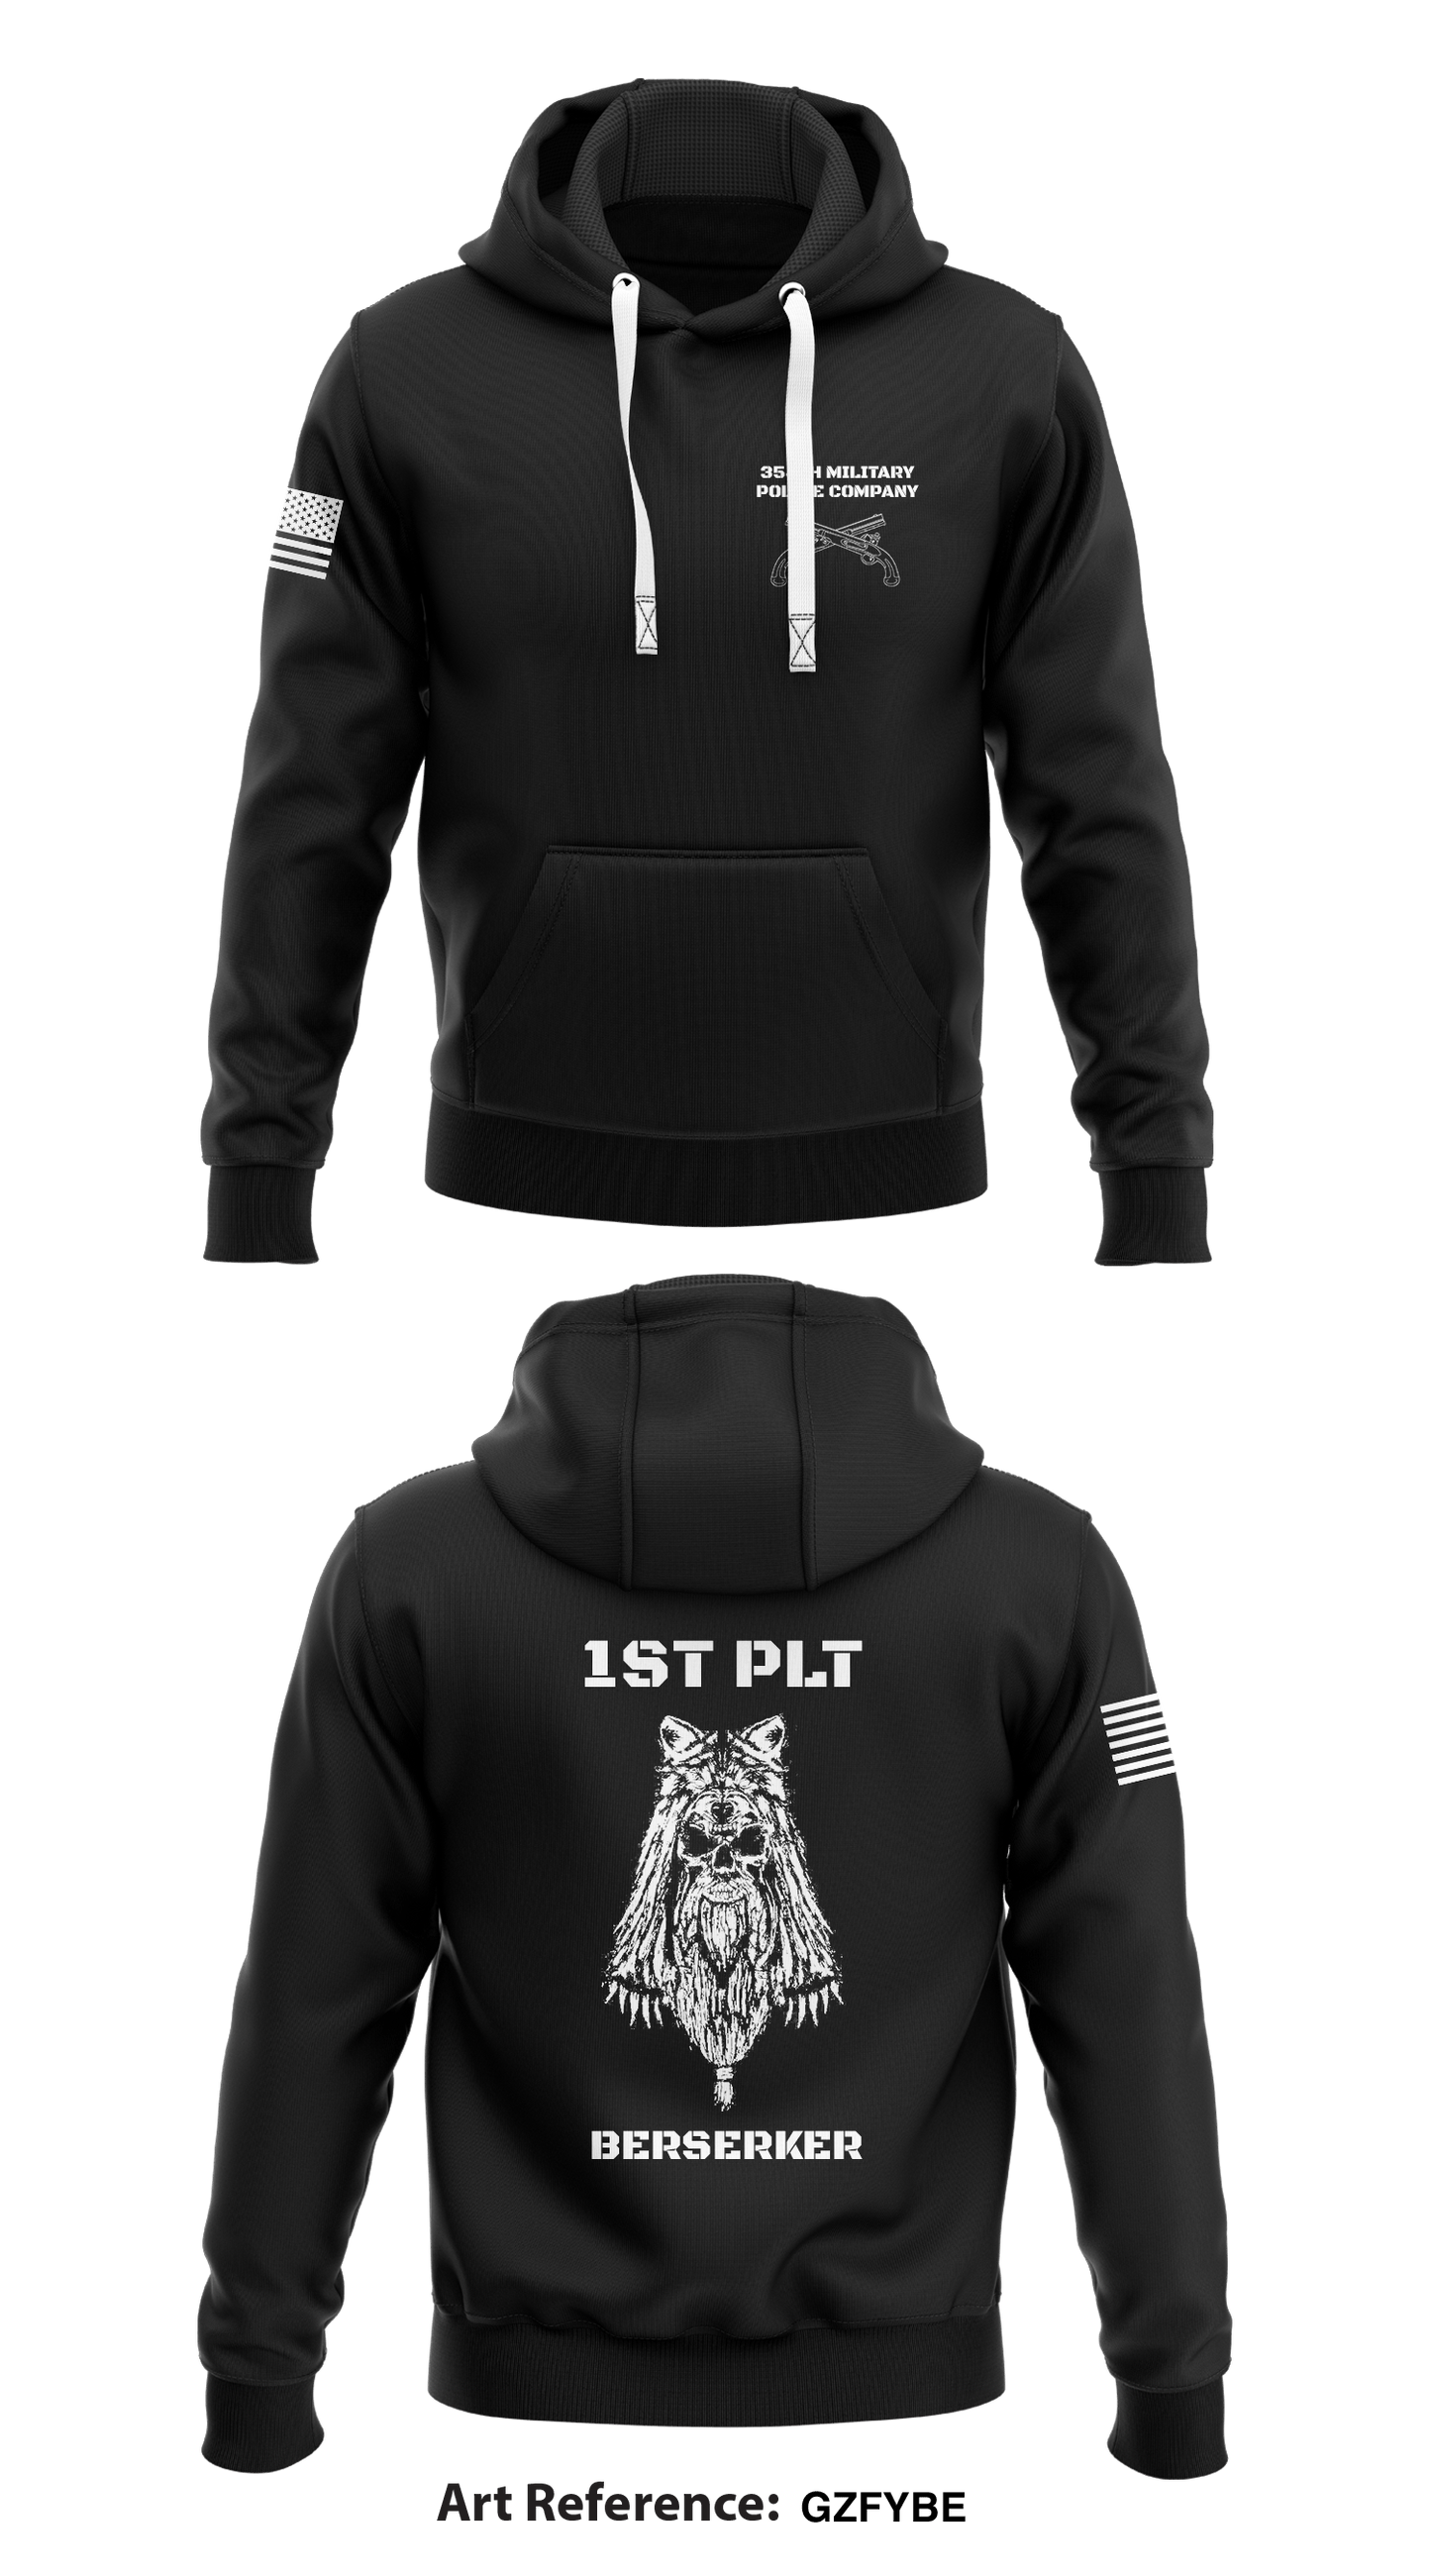 354th MP CO 1st PLT BERSERKER Store 1  Core Men's Hooded Performance Sweatshirt - GzFYbE